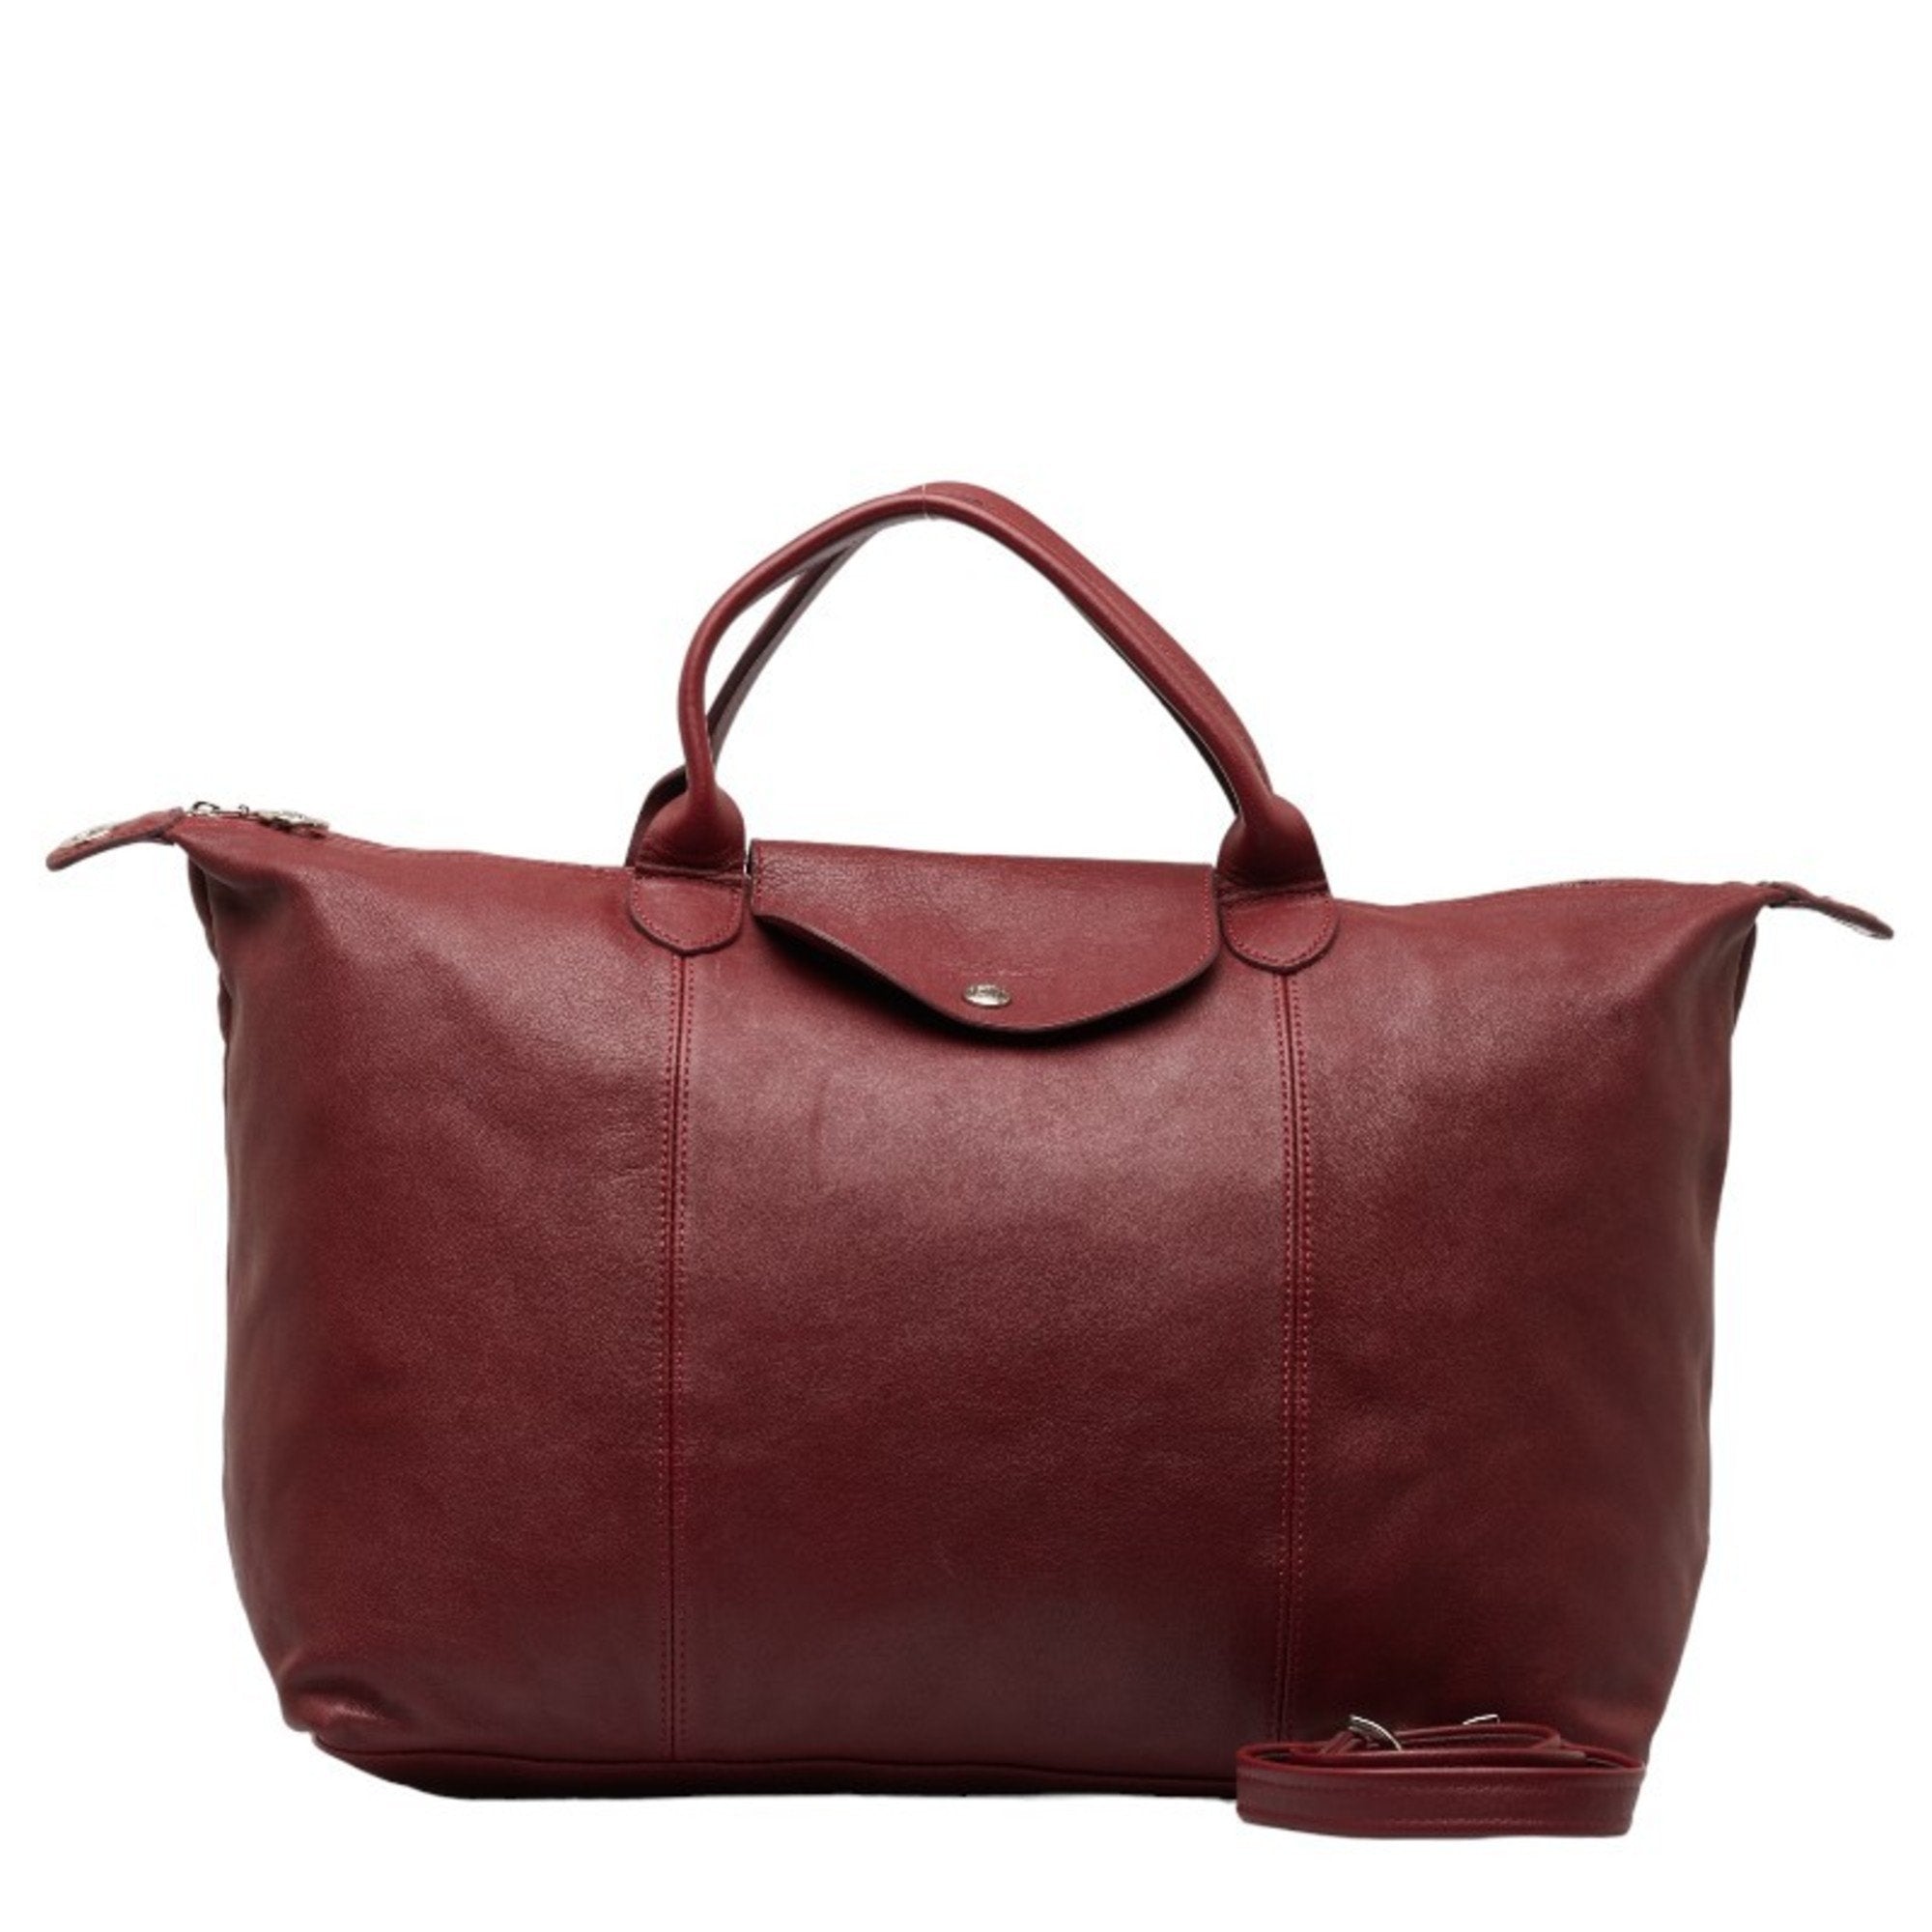 Pliage Cuir Handbag Shoulder Bag Bordeaux Leather Women's